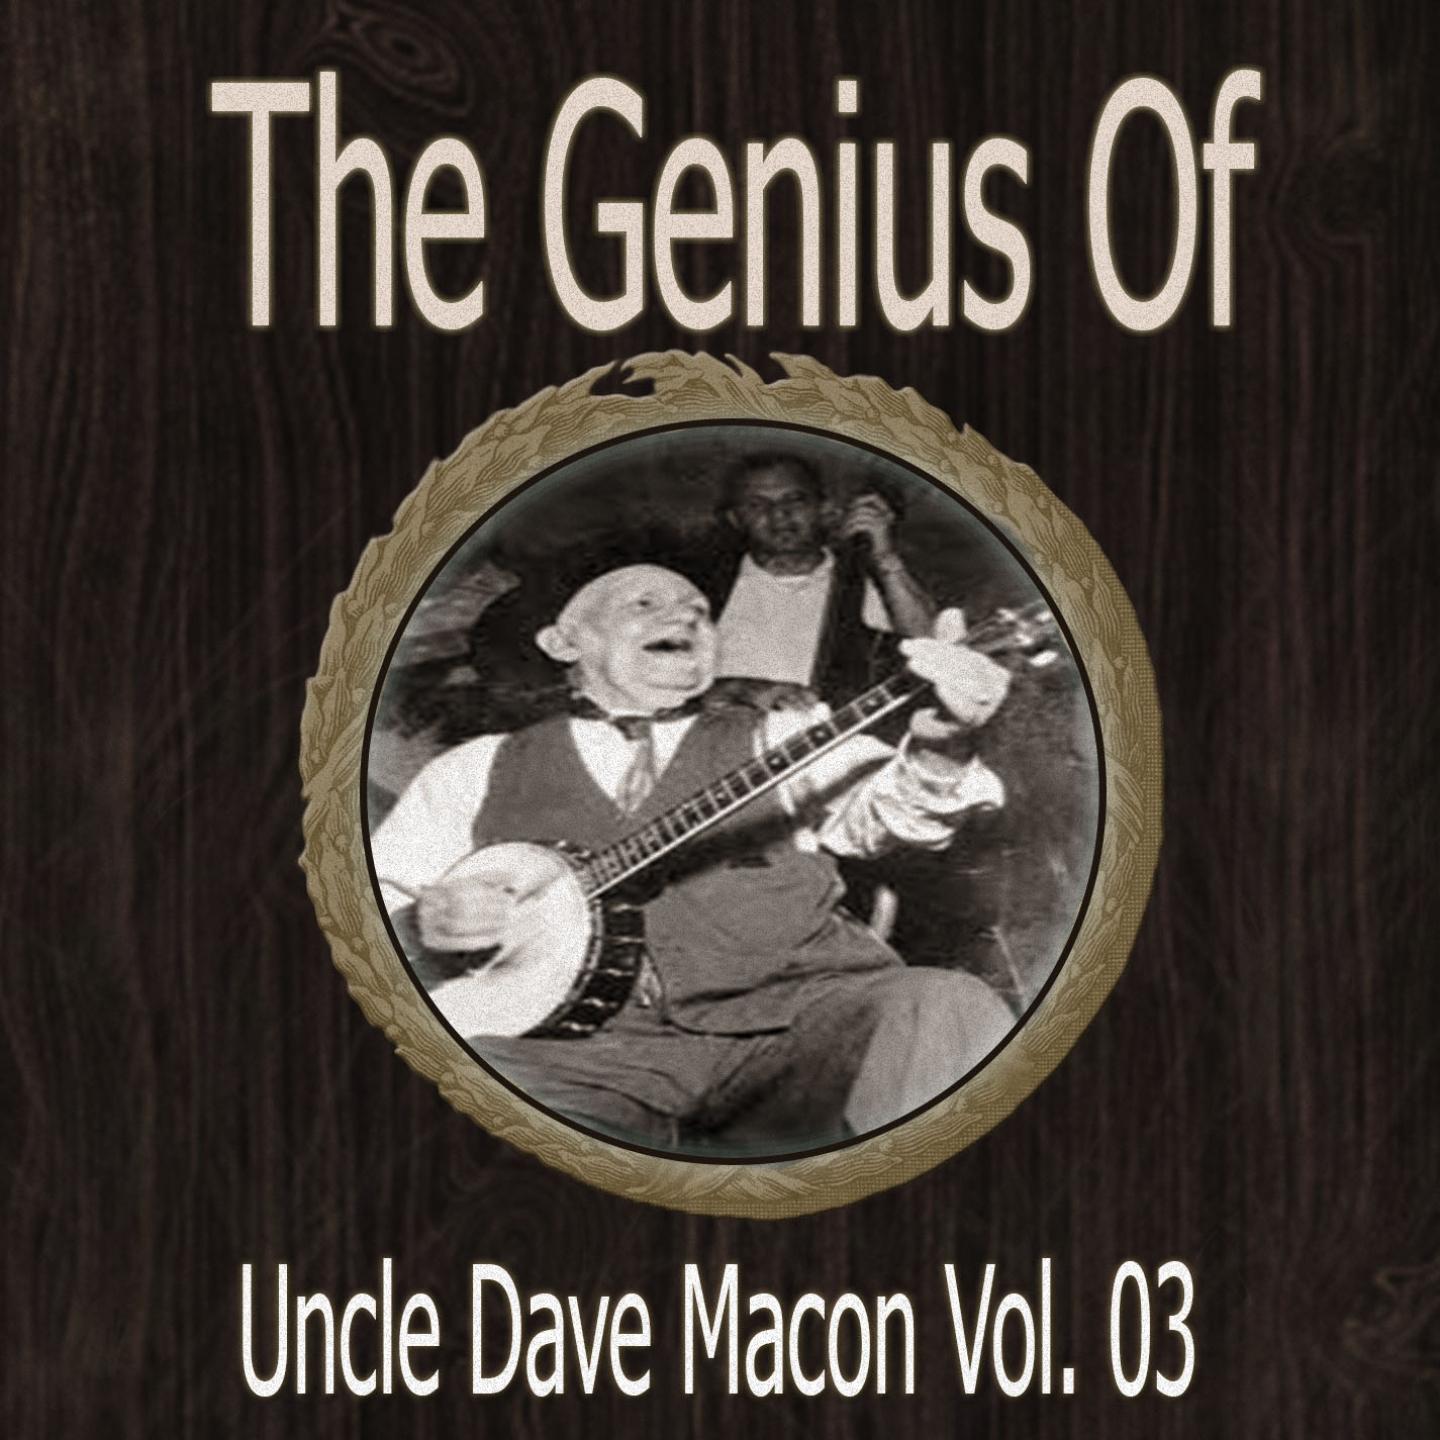 The Genius of Uncle Dave Macon Vol 03